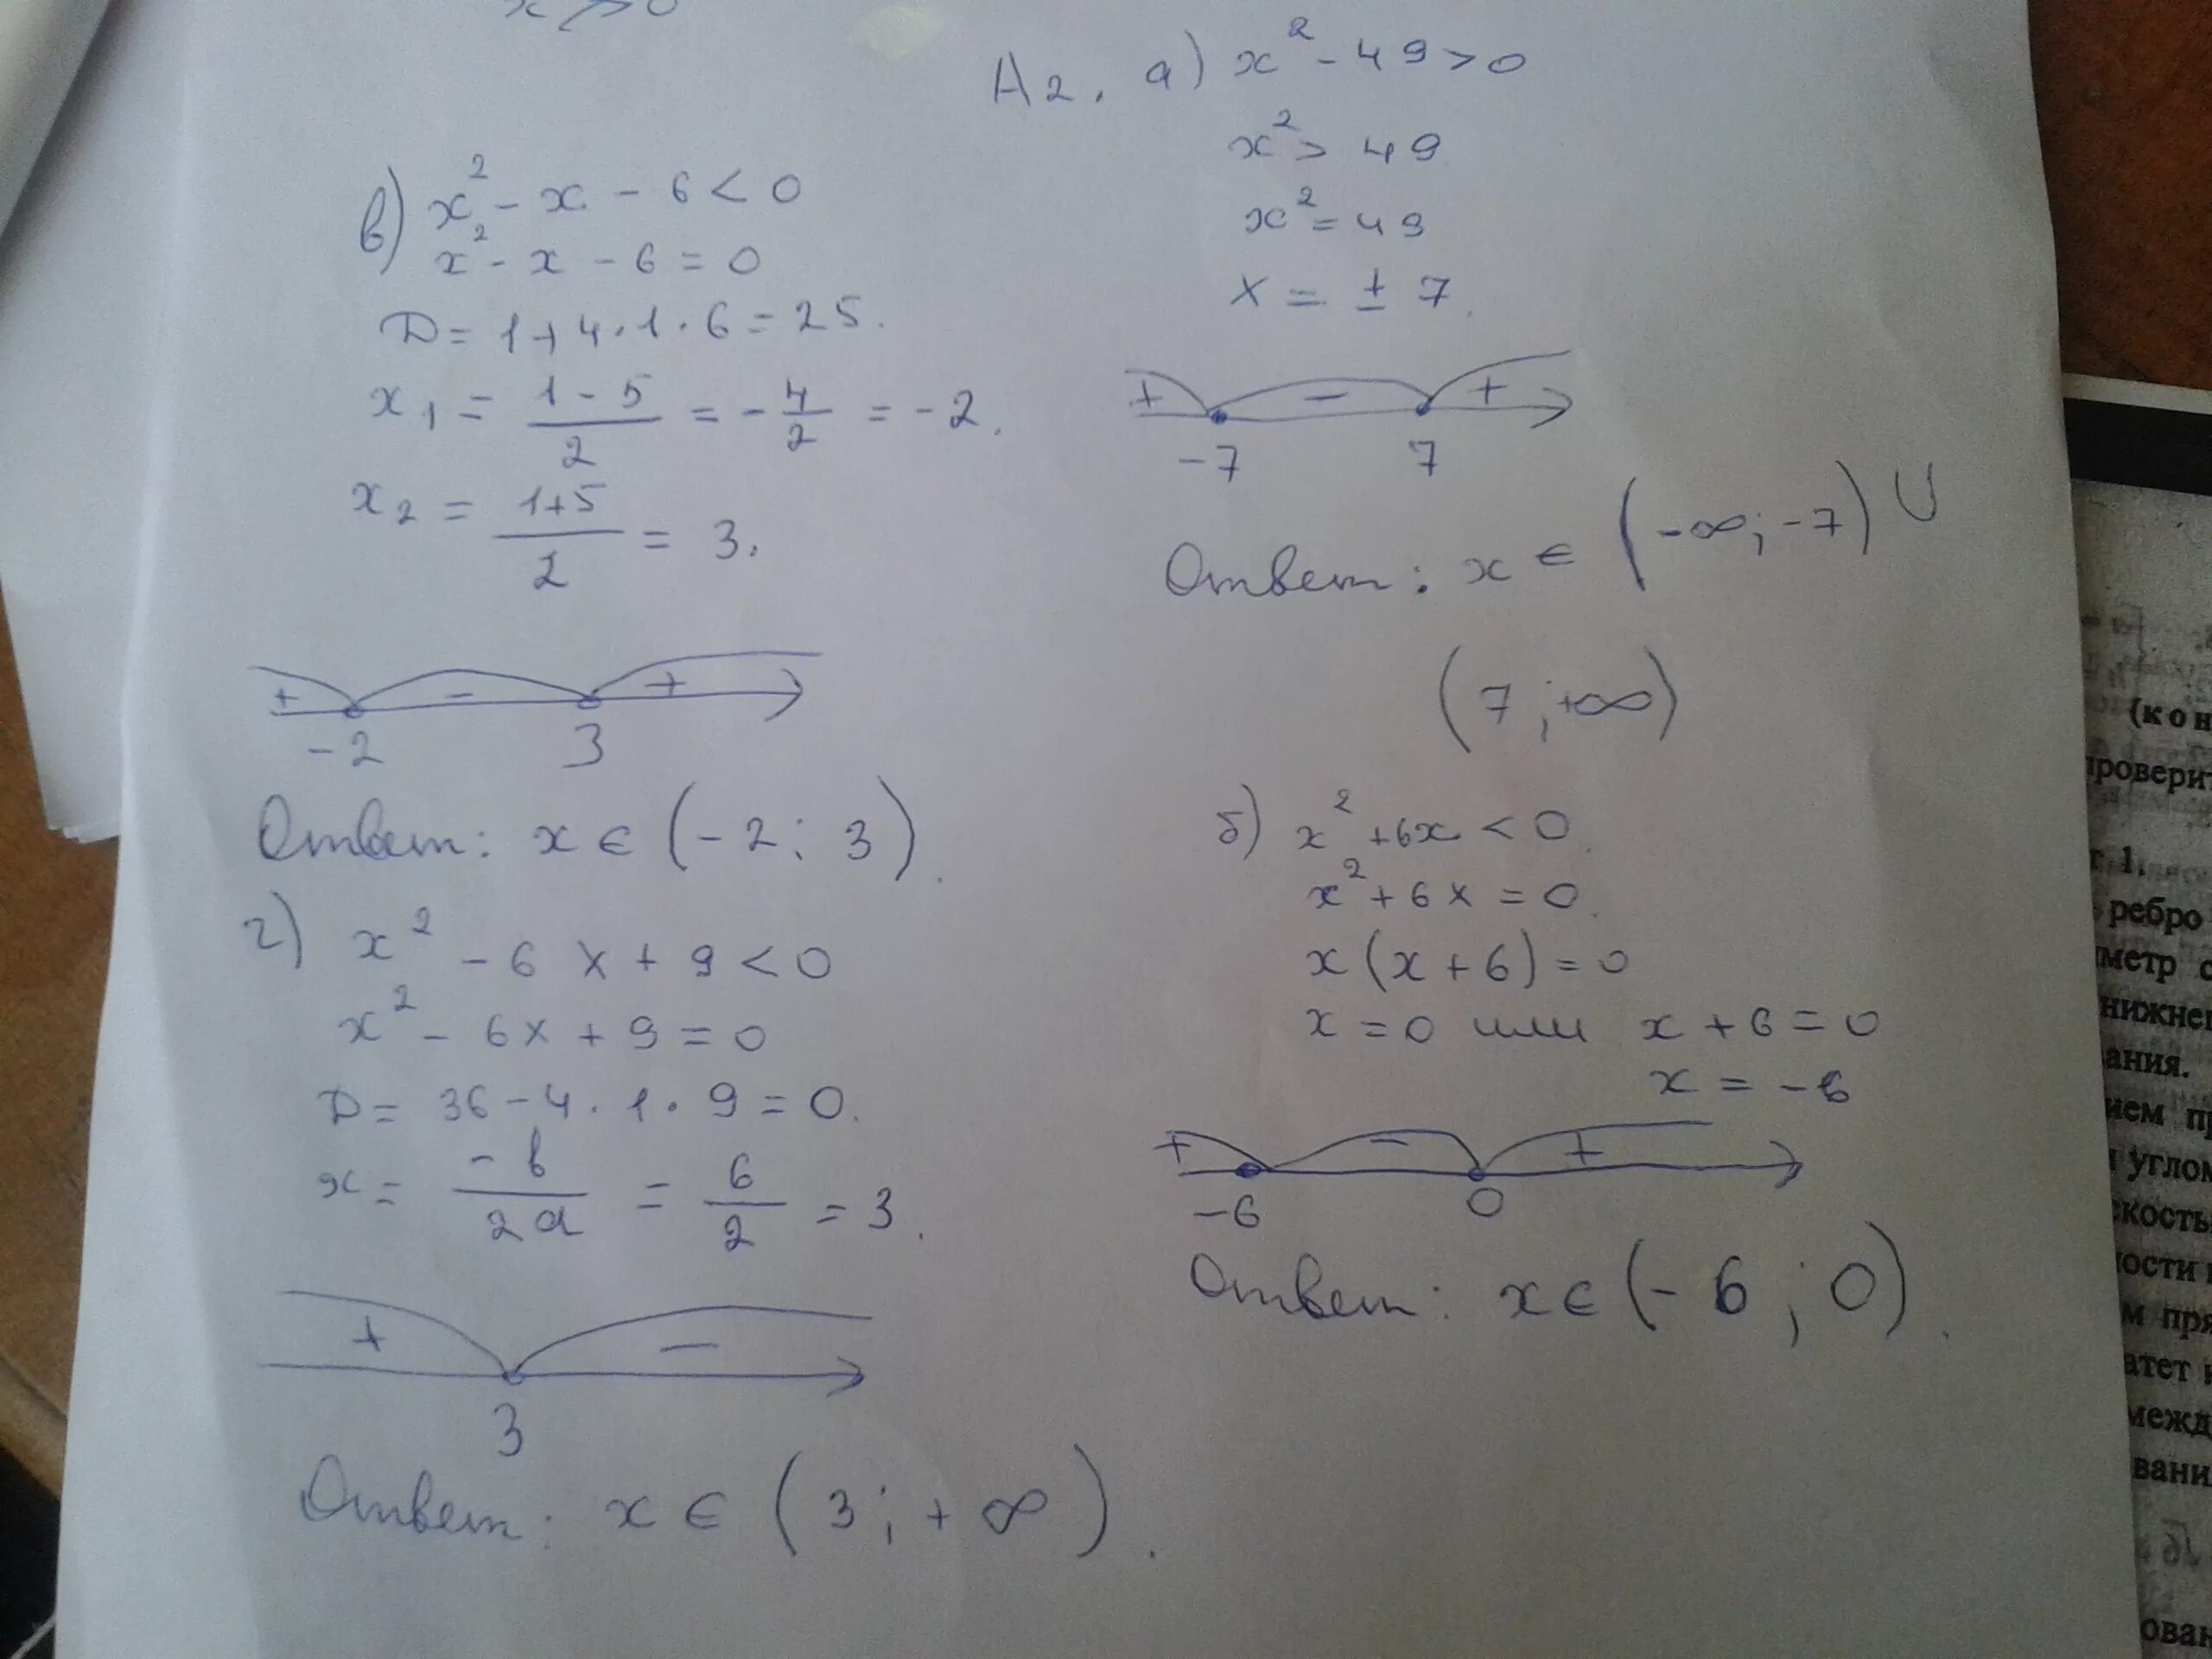 Решить неравенства 2x 2 x 2. (X2-49)/x2=0. Решите неравенство x2 x2 49 49. Решение неравенства x+2-6x^2>0. Решение неравенств x^2 - 49 >= 0.